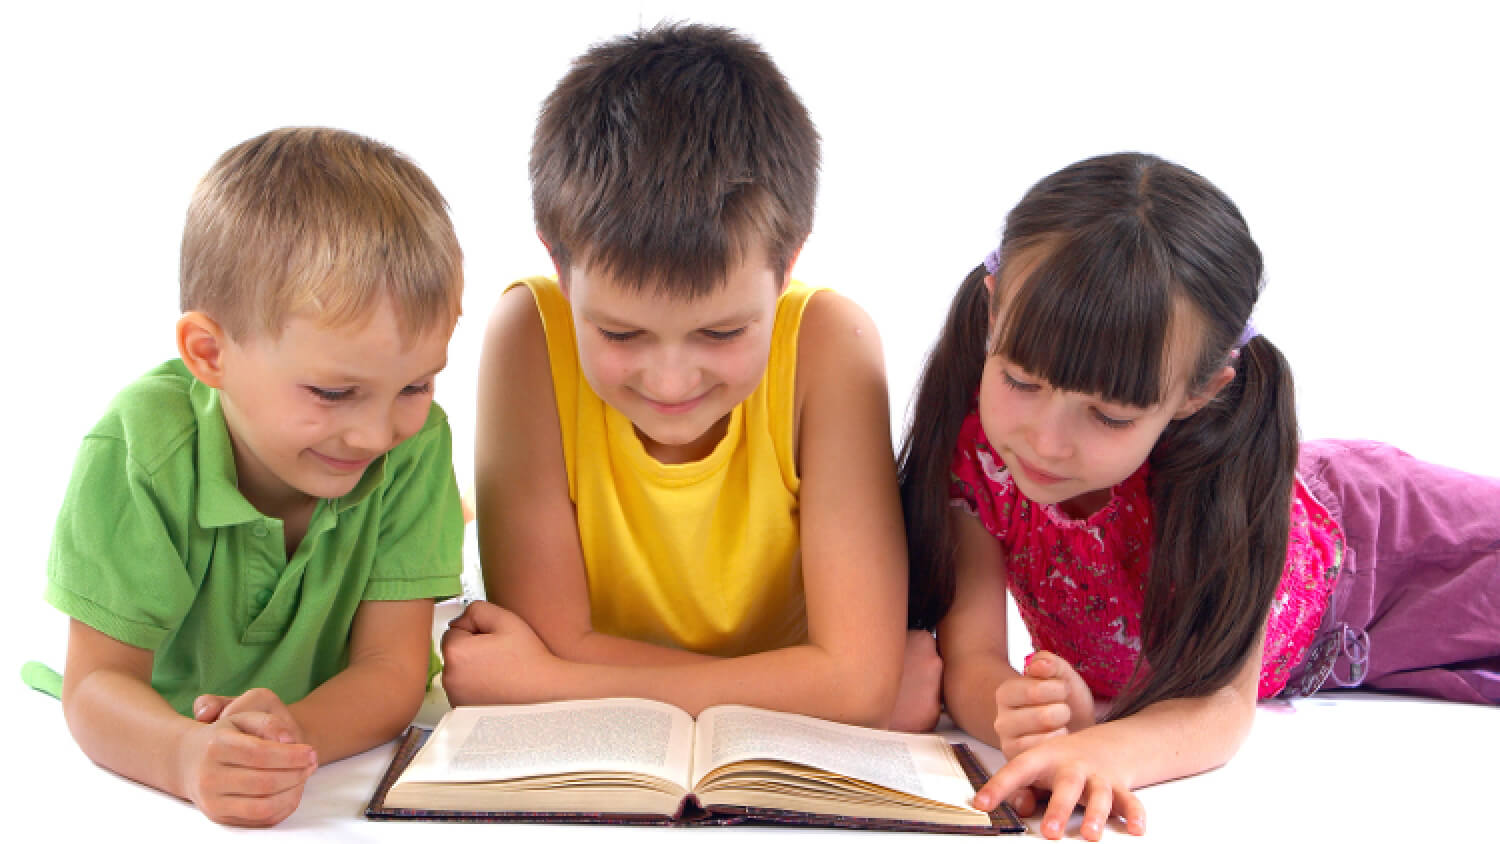 Дети читают книгу